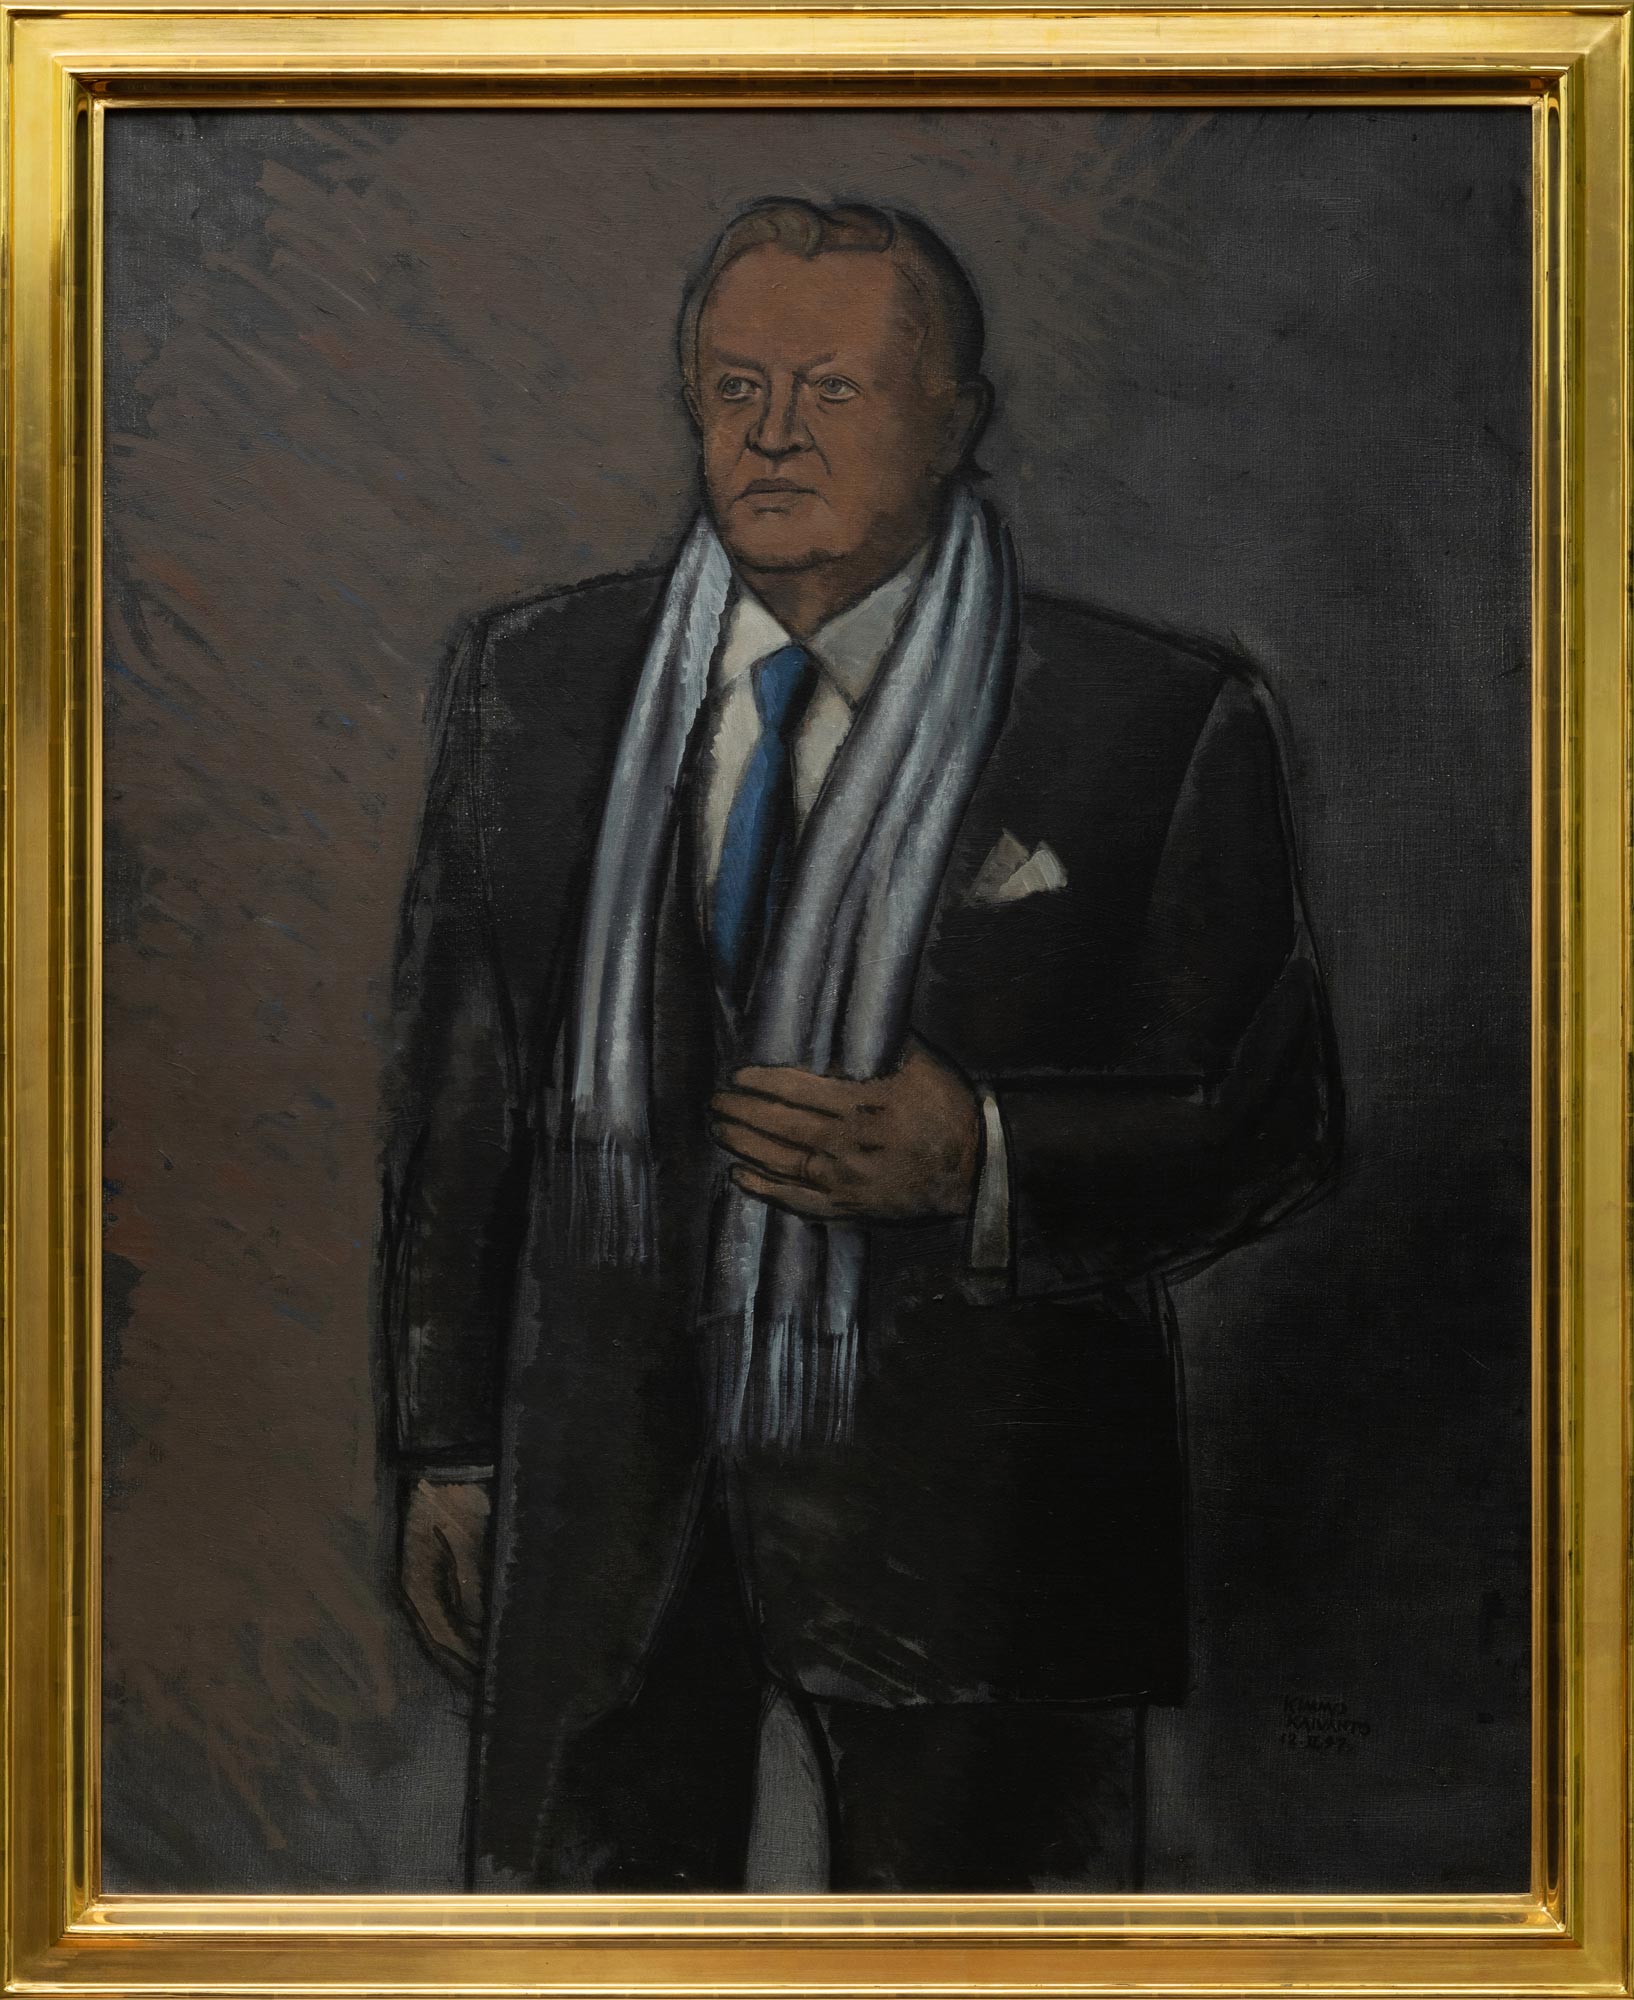 Presidentti Martti Ahtisaaren muotokuva